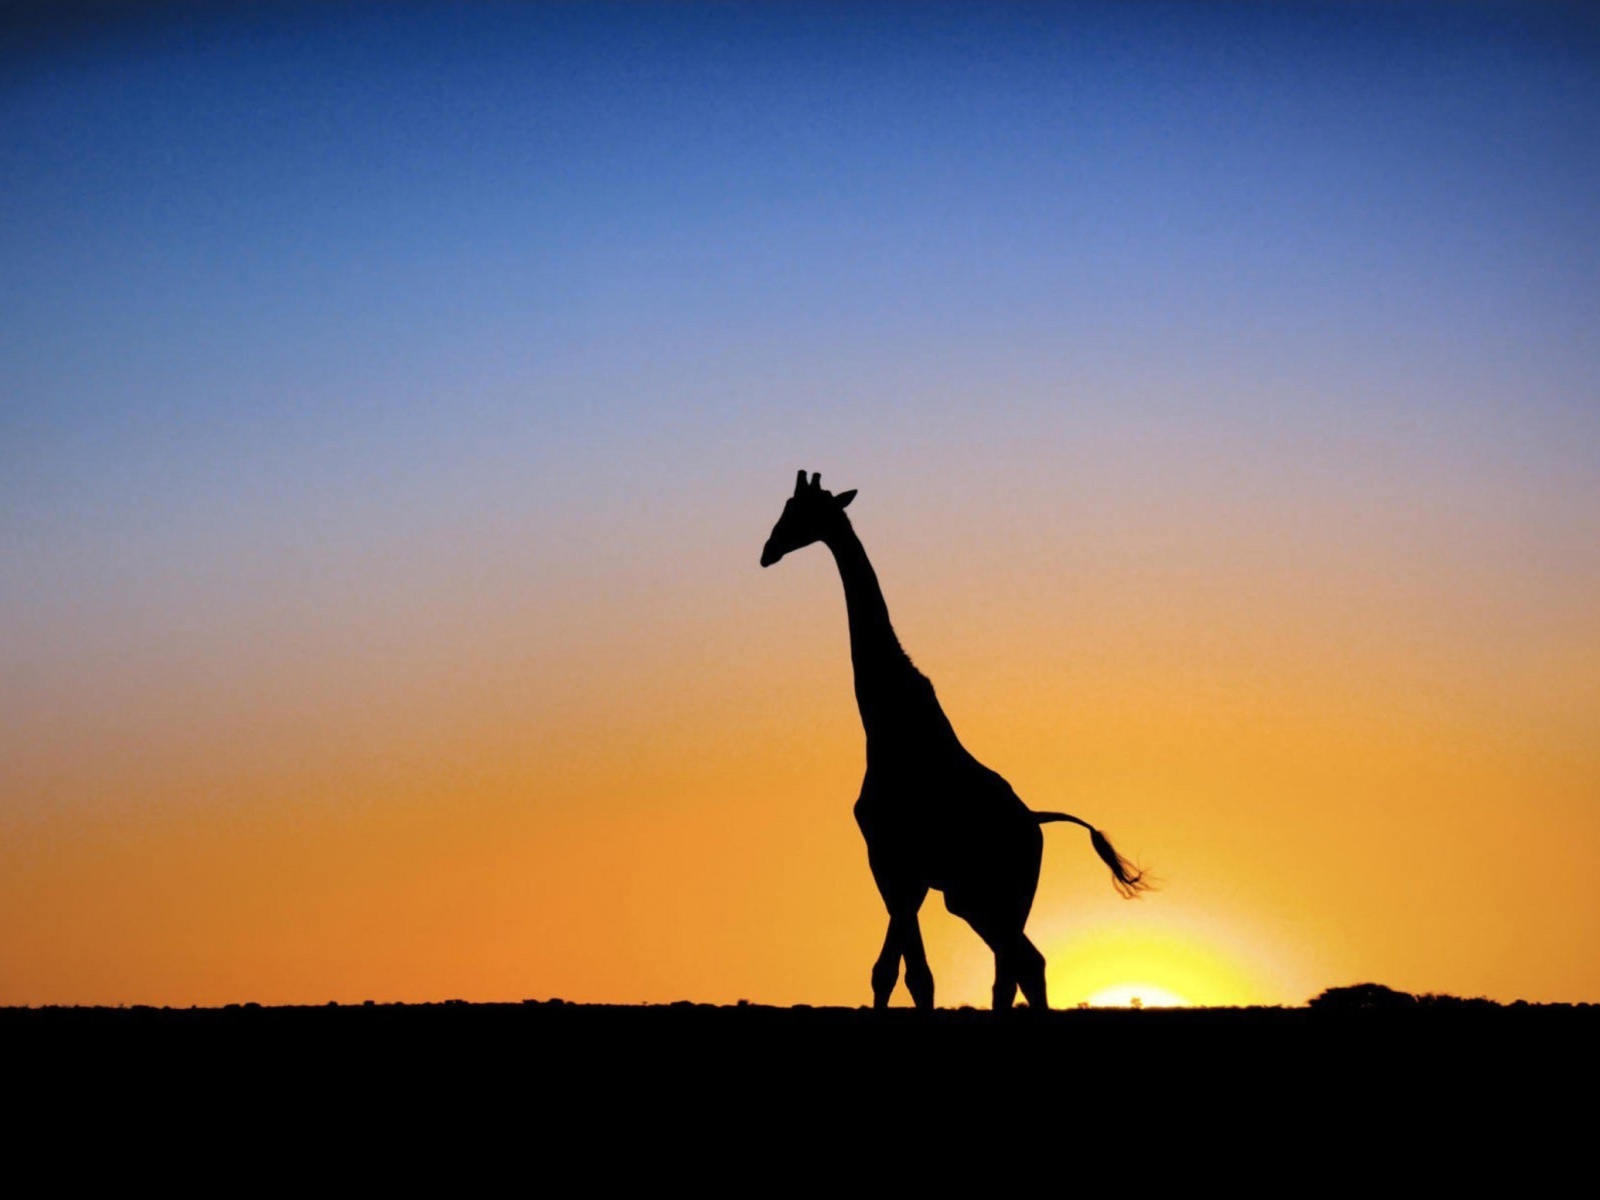 Safari At Sunset - Giraffe's Silhouette screenshot #1 1600x1200